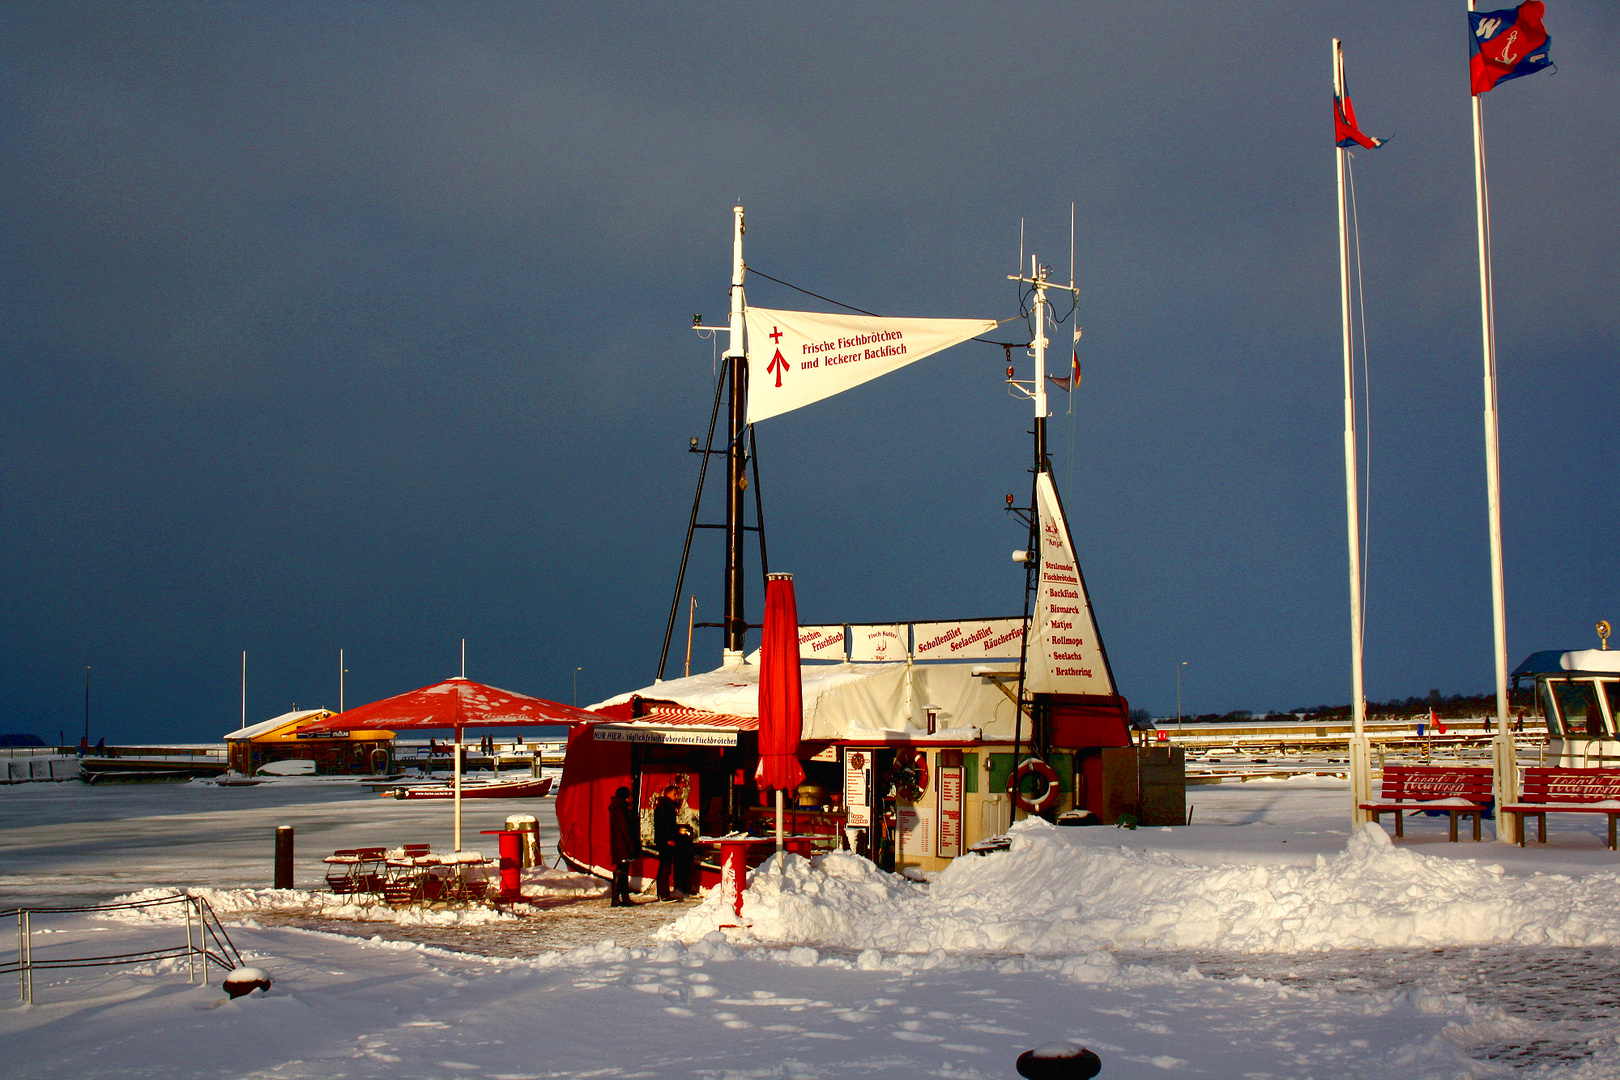 Letzte Fischbrötchenstation vor dem Nordpol